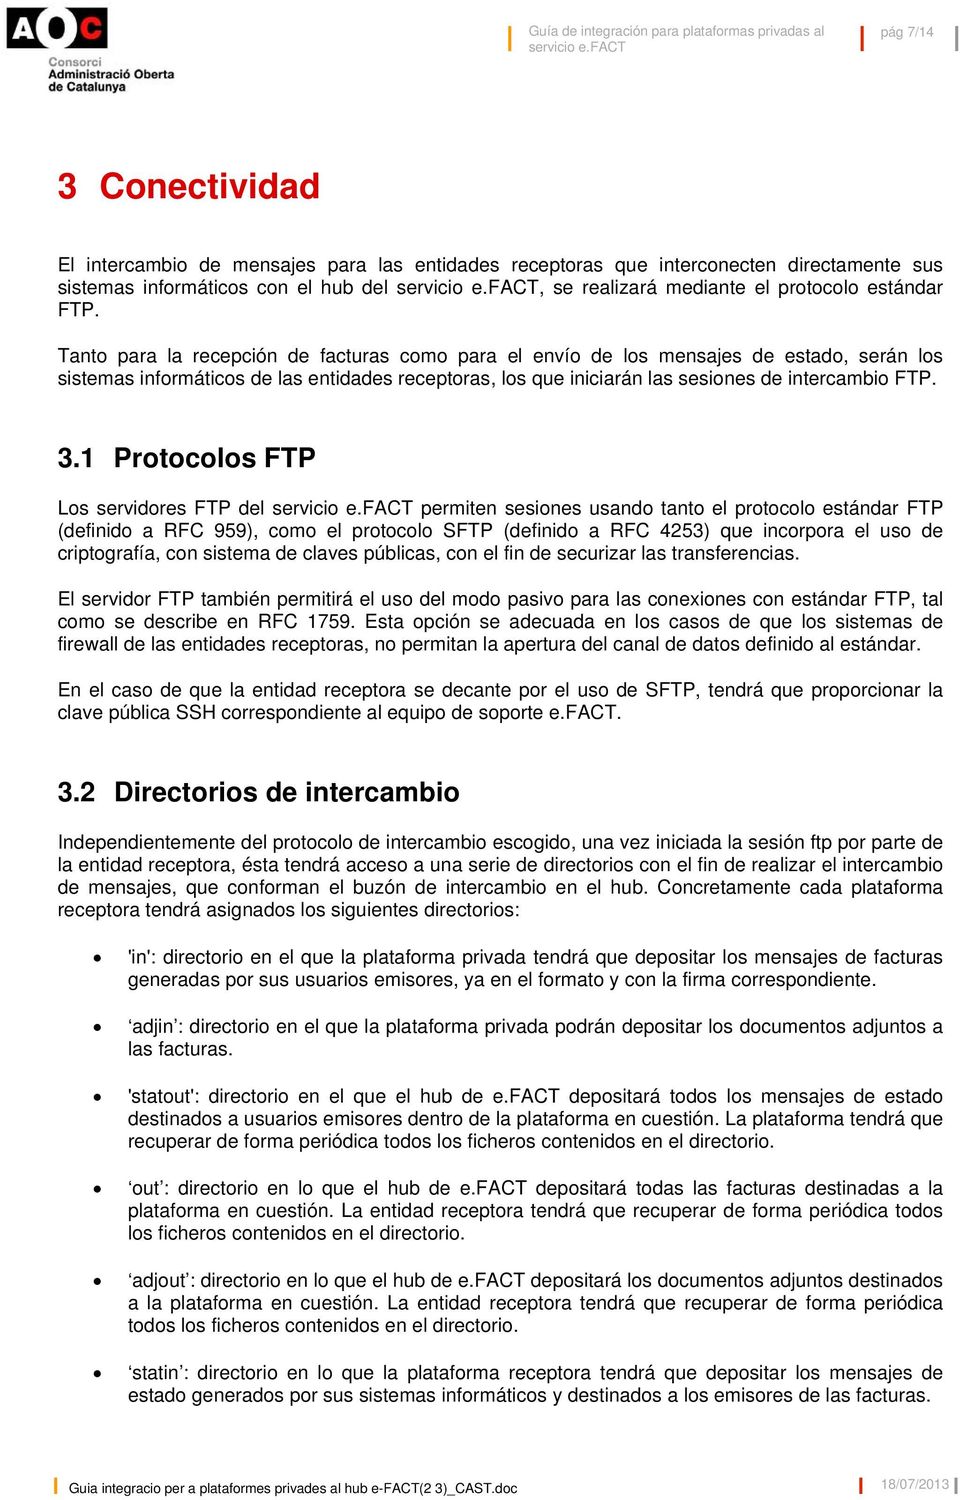 3.1 Protocolos FTP Los servidores FTP del permiten sesiones usando tanto el protocolo estándar FTP (definido a RFC 959), como el protocolo SFTP (definido a RFC 4253) que incorpora el uso de